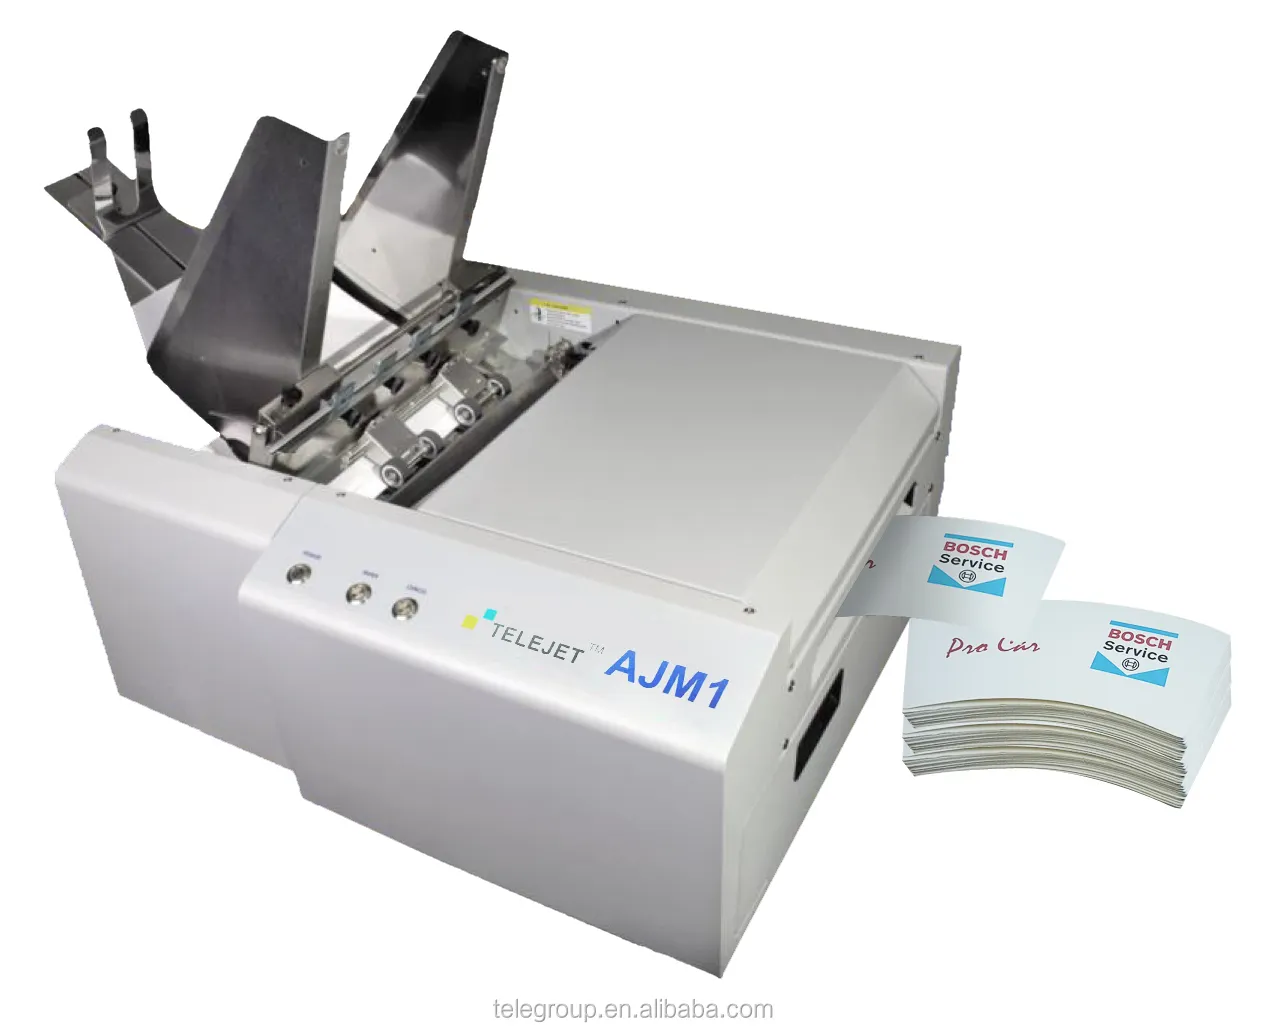 2022 alta velocidade desktop de cor completa ajm1 copo de papel ventiladores impressora máquina de copo de papel fabricante